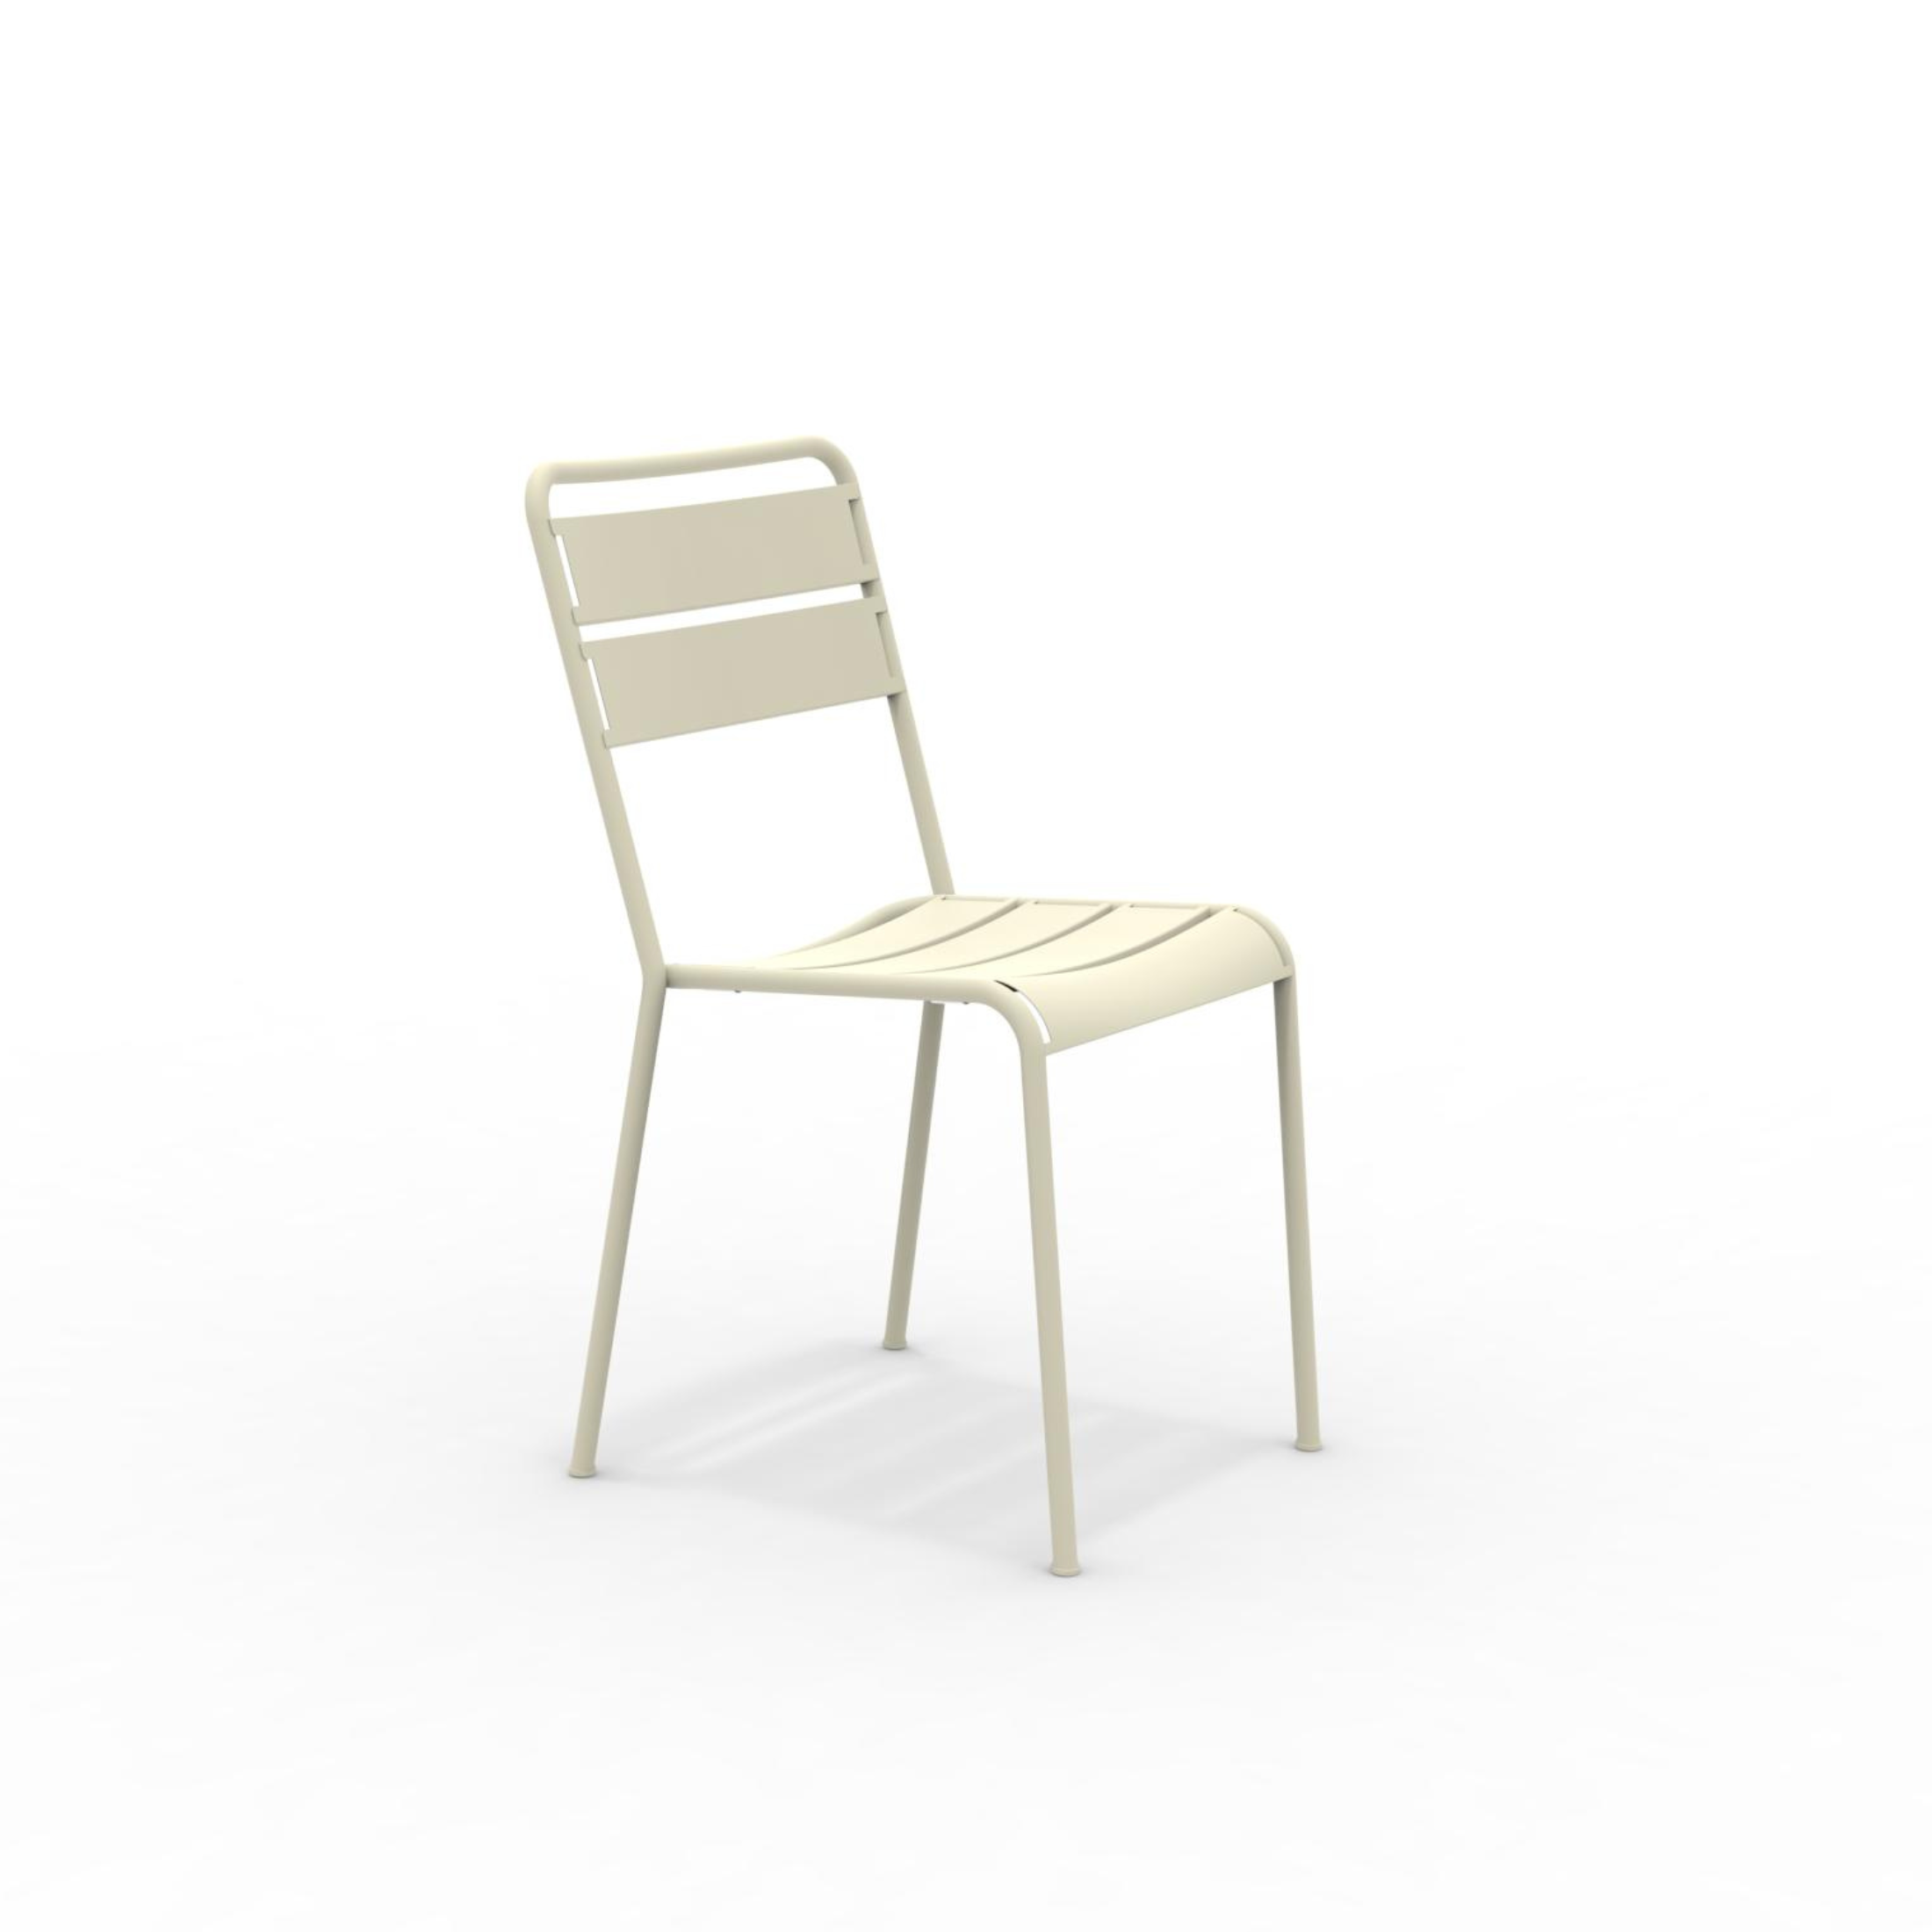 Set di sedie da giardino in metallo verniciato "Twist" moderne ed impilabili cm 45x57 86h